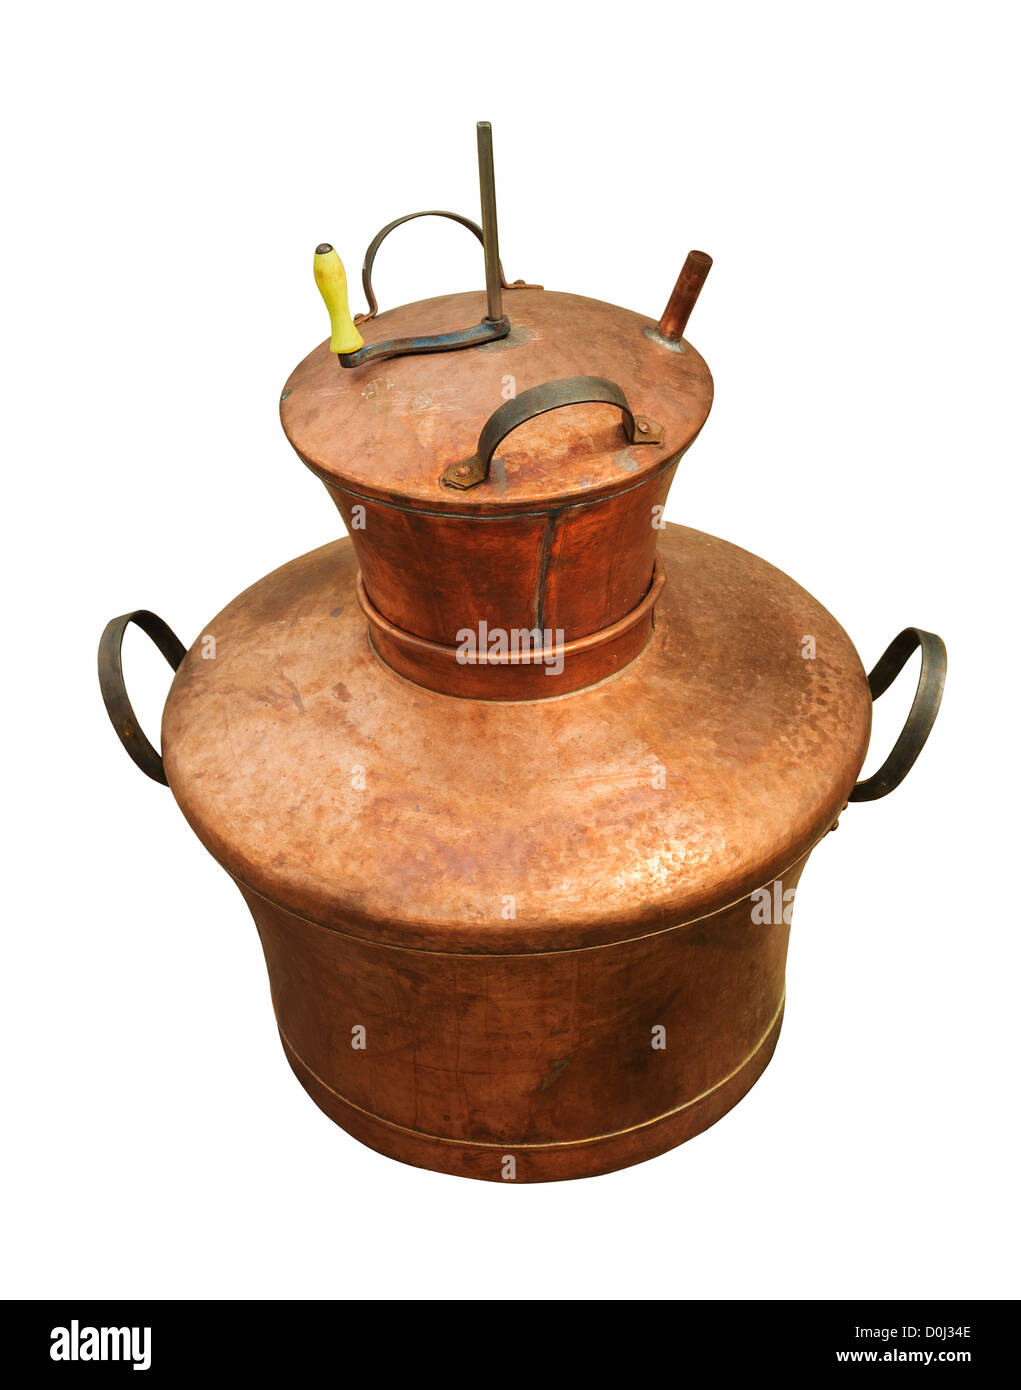 Chaudière en cuivre isolé sur fond blanc, utilisé pour obtenir une  eau-de-vie traditionnelle roumaine Photo Stock - Alamy